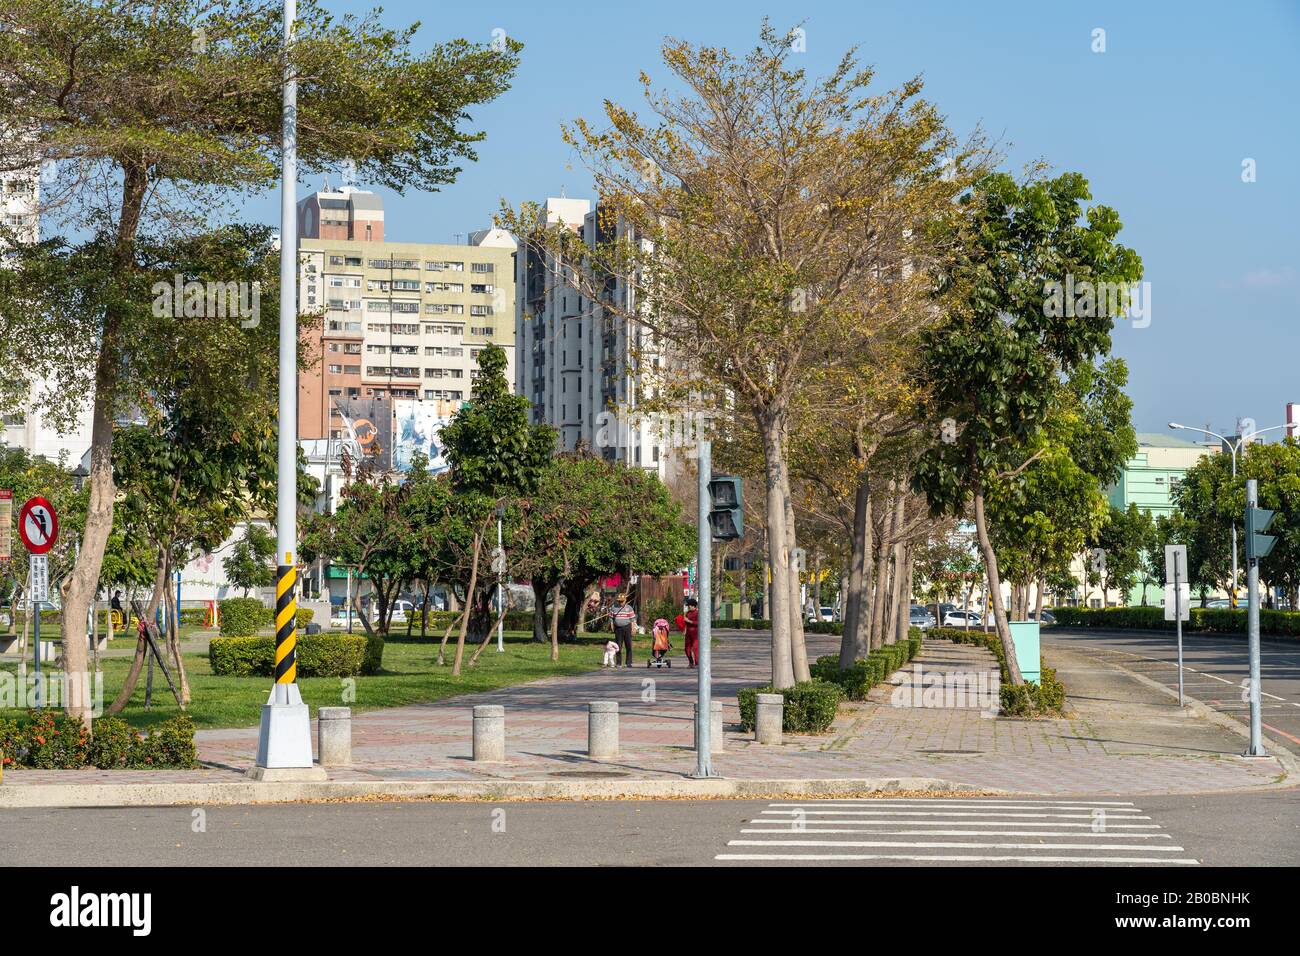 Parc Taichung Xinping au quartier de Beitun Shuinan zone économique et commerciale dans le ciel bleu jour ensoleillé. Ancien Aéroport De Shuinan. Taichung City, Taïwan Banque D'Images